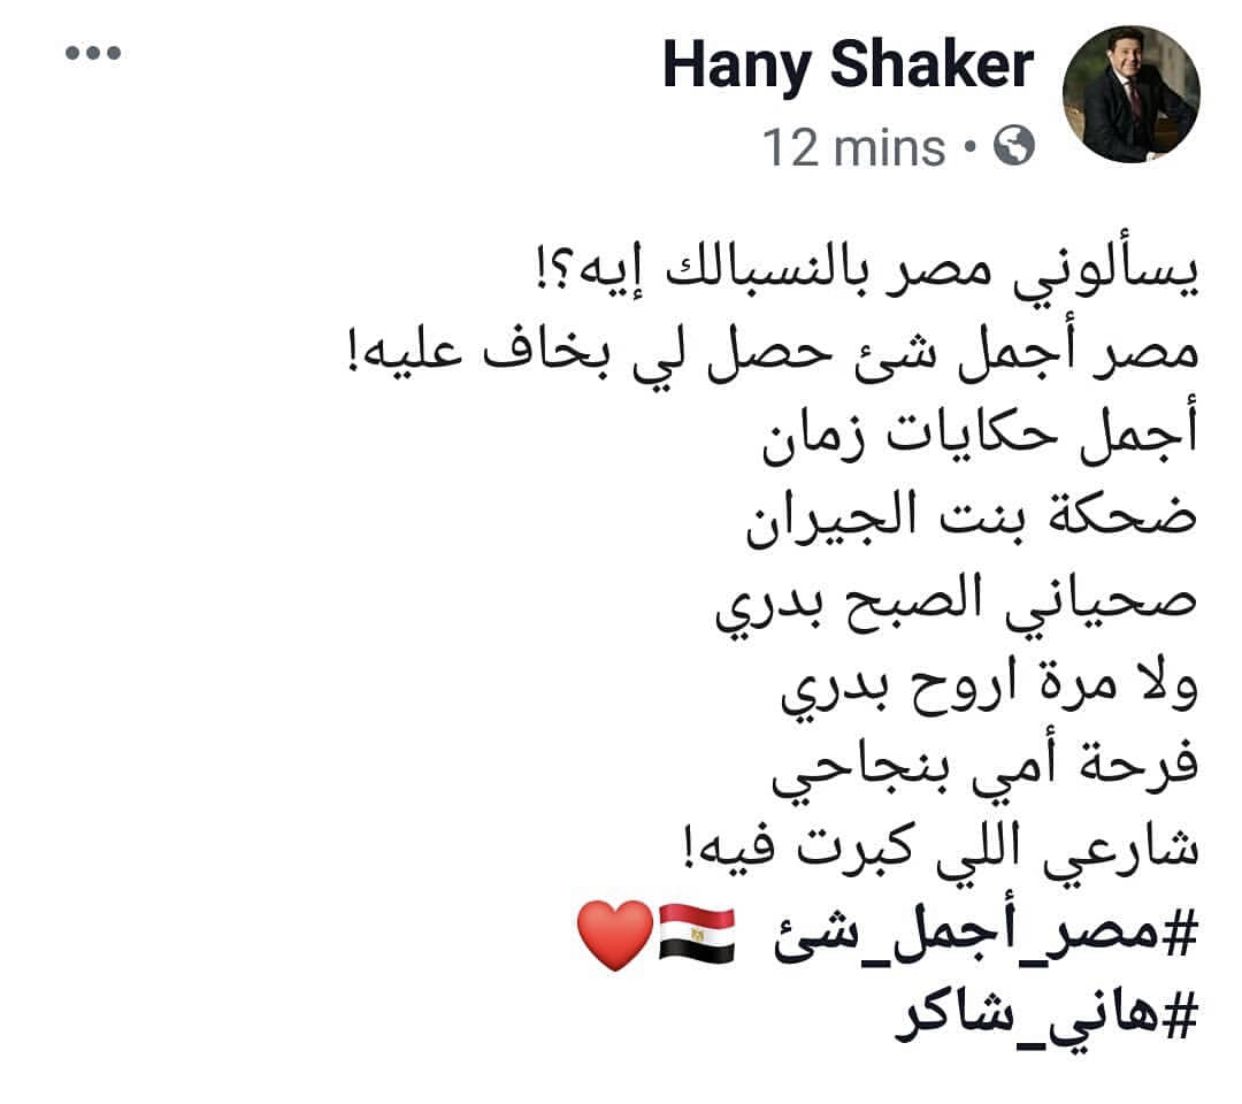 هاني شكر مصر تعني له كل شيء